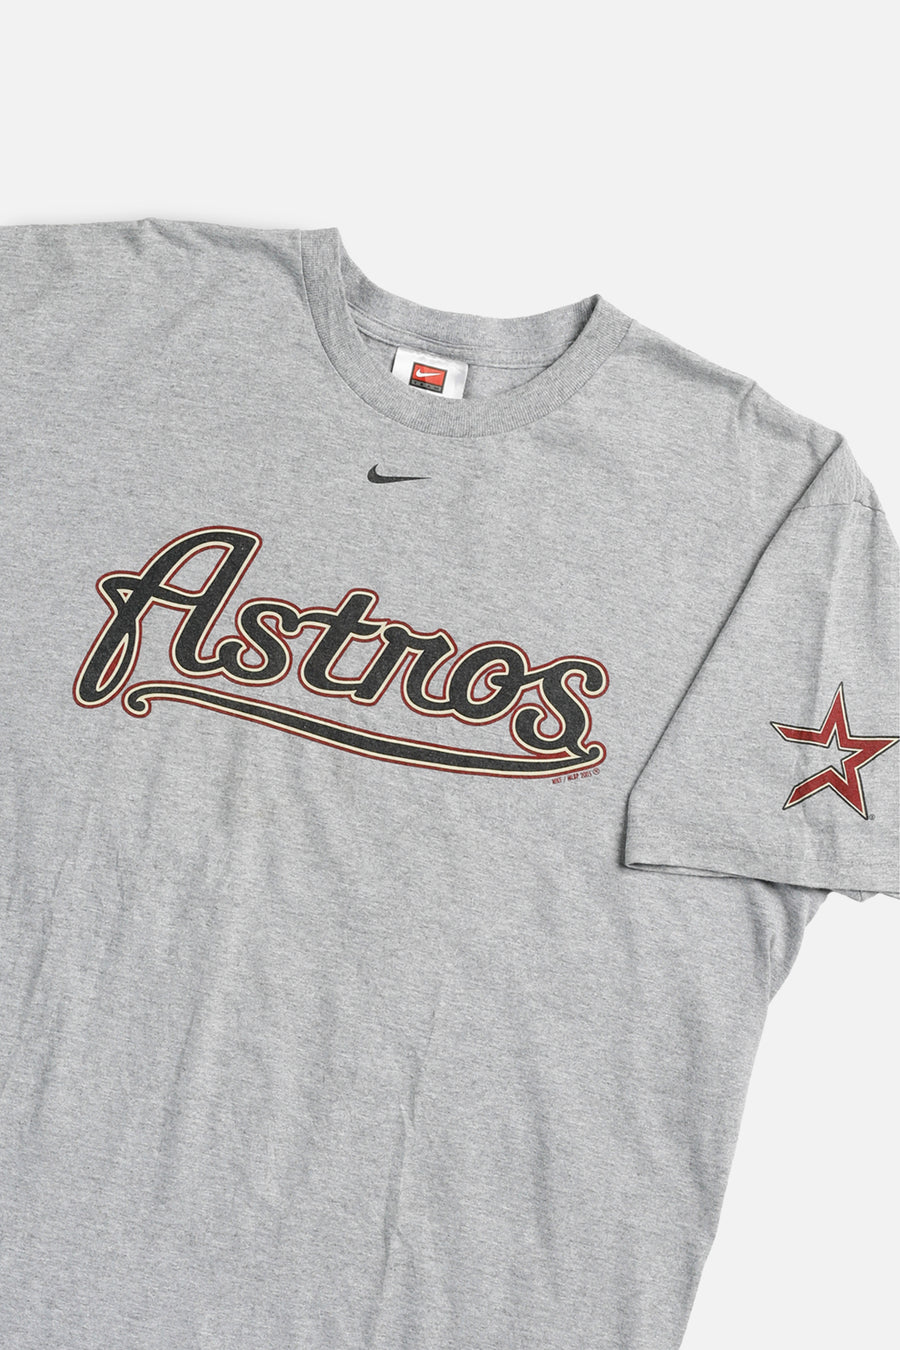 Vintage Houston Astros MLB Tee - L